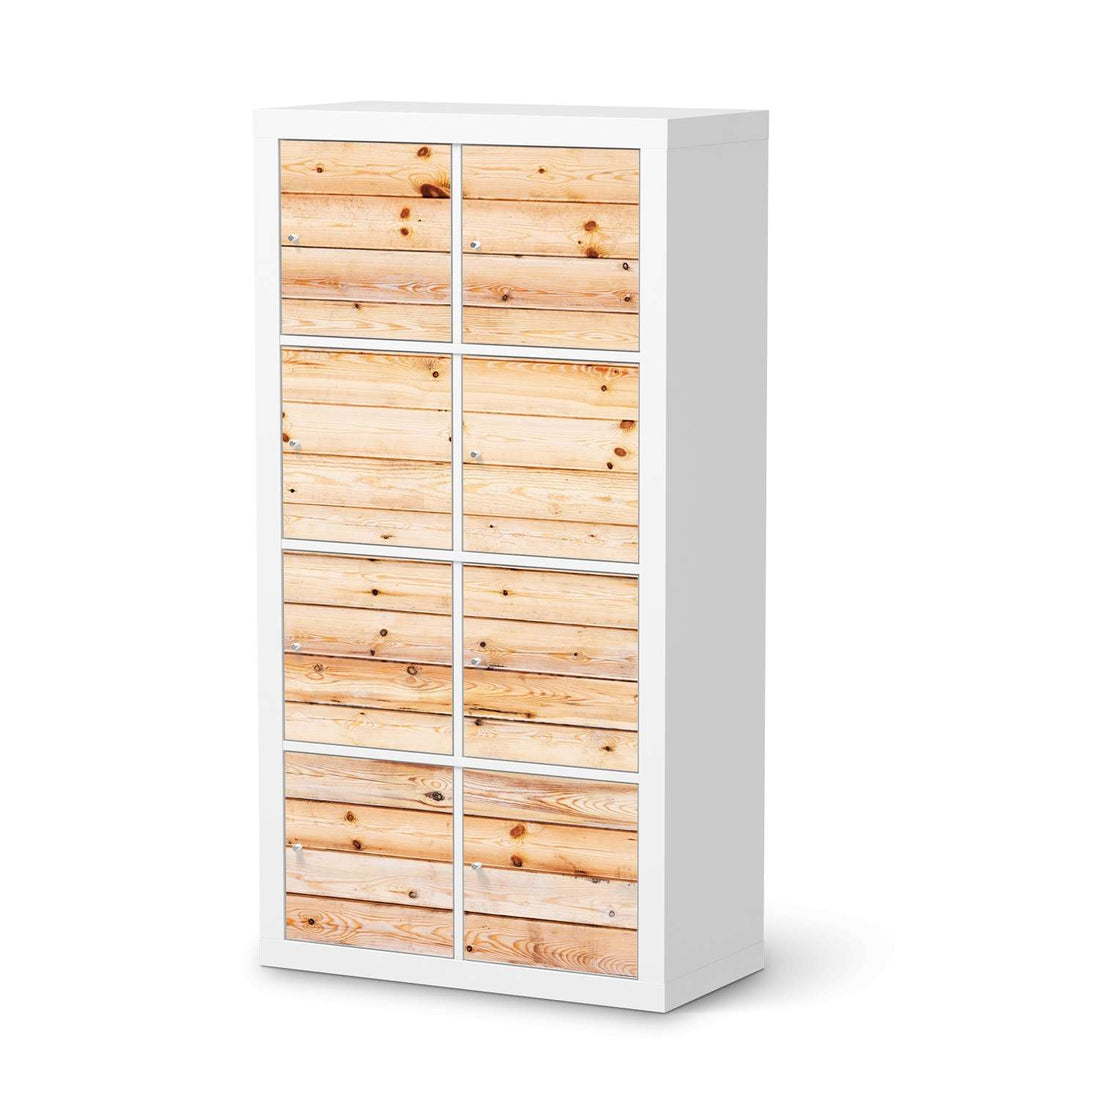 Folie für Möbel Bright Planks - IKEA Kallax Regal 8 Türen  - weiss